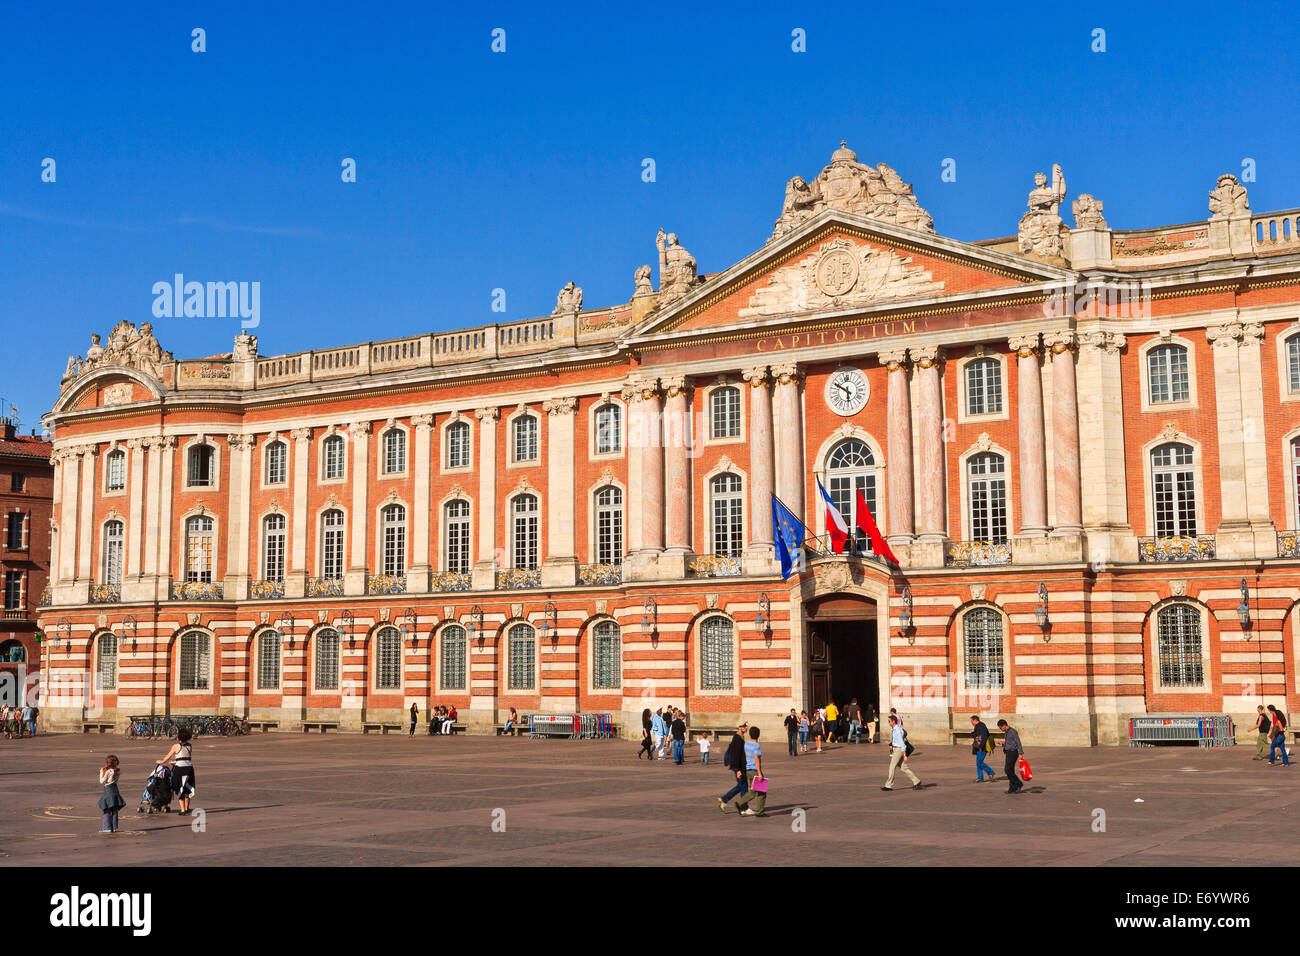 France, Toulouse, Place du Capitole Stock Photo